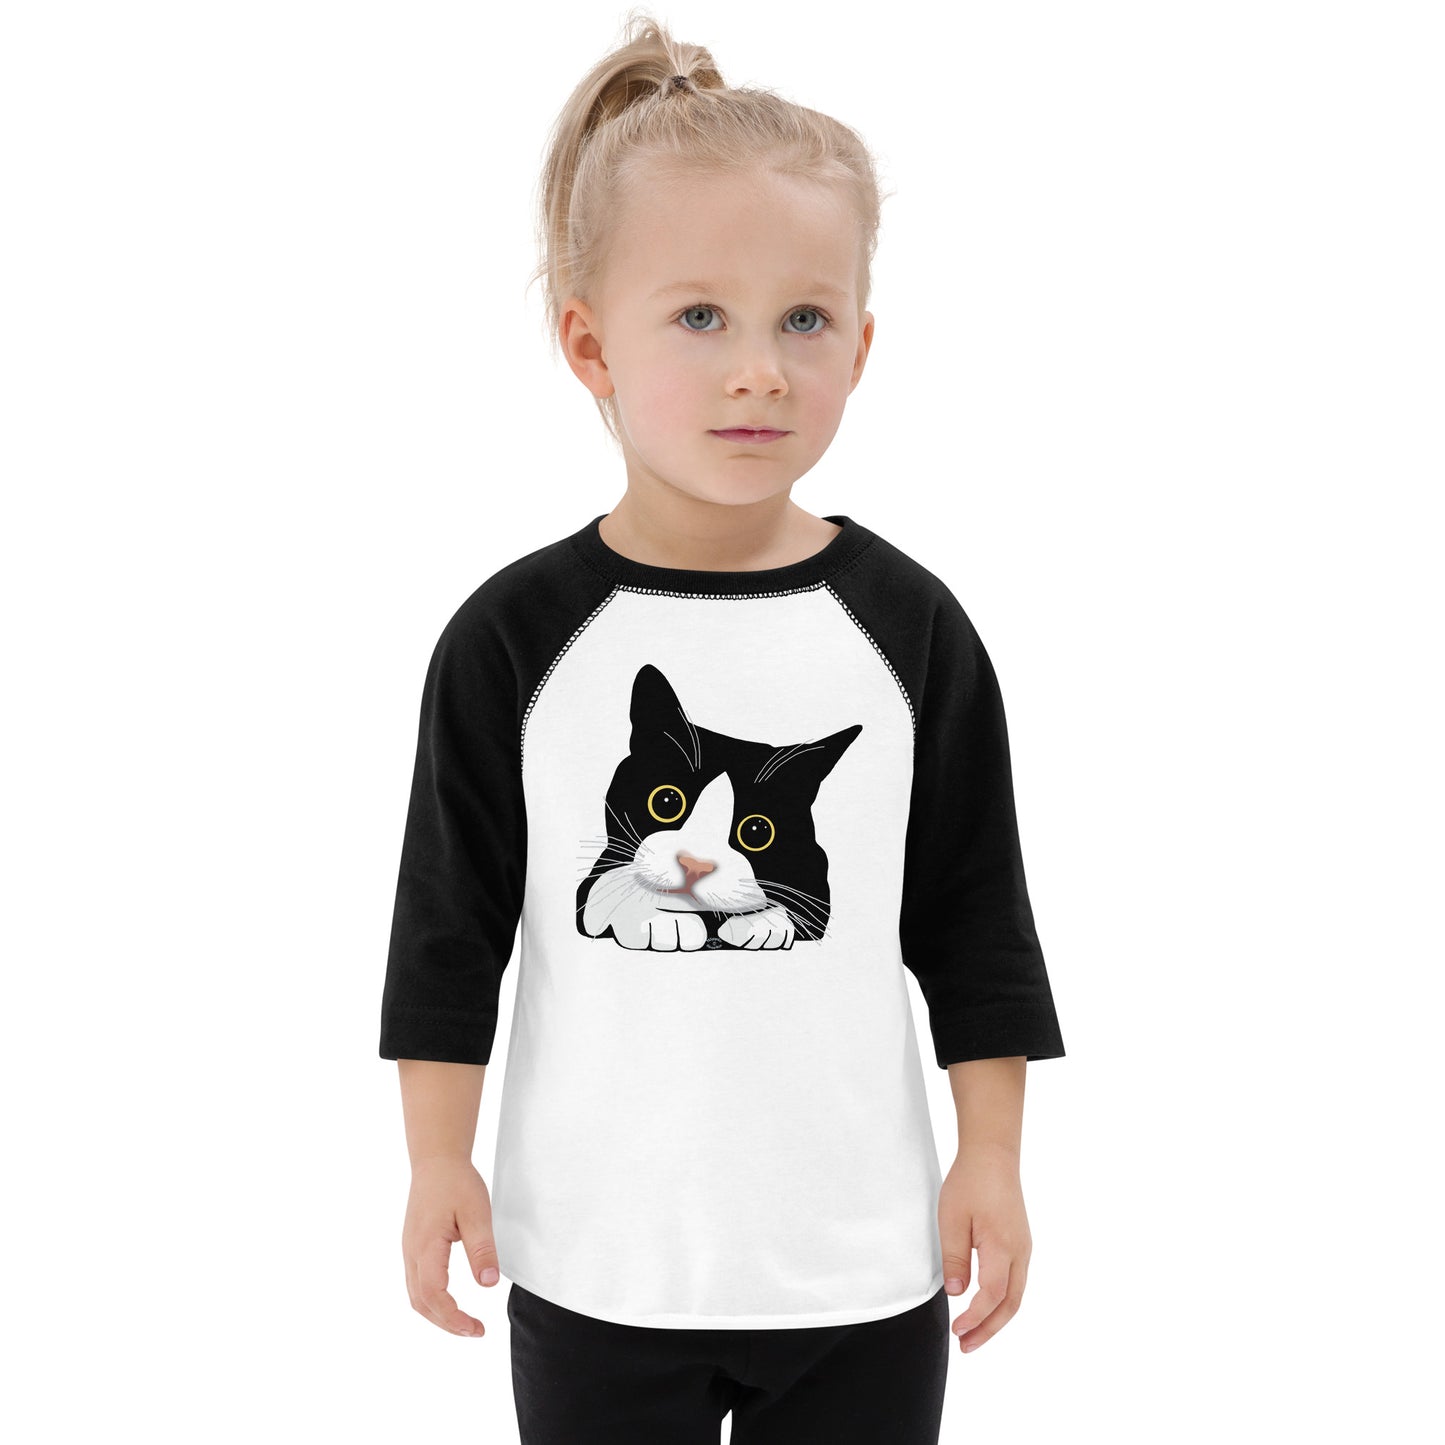 "Kitten with Big Eyes" Toddler Baseball Shirt